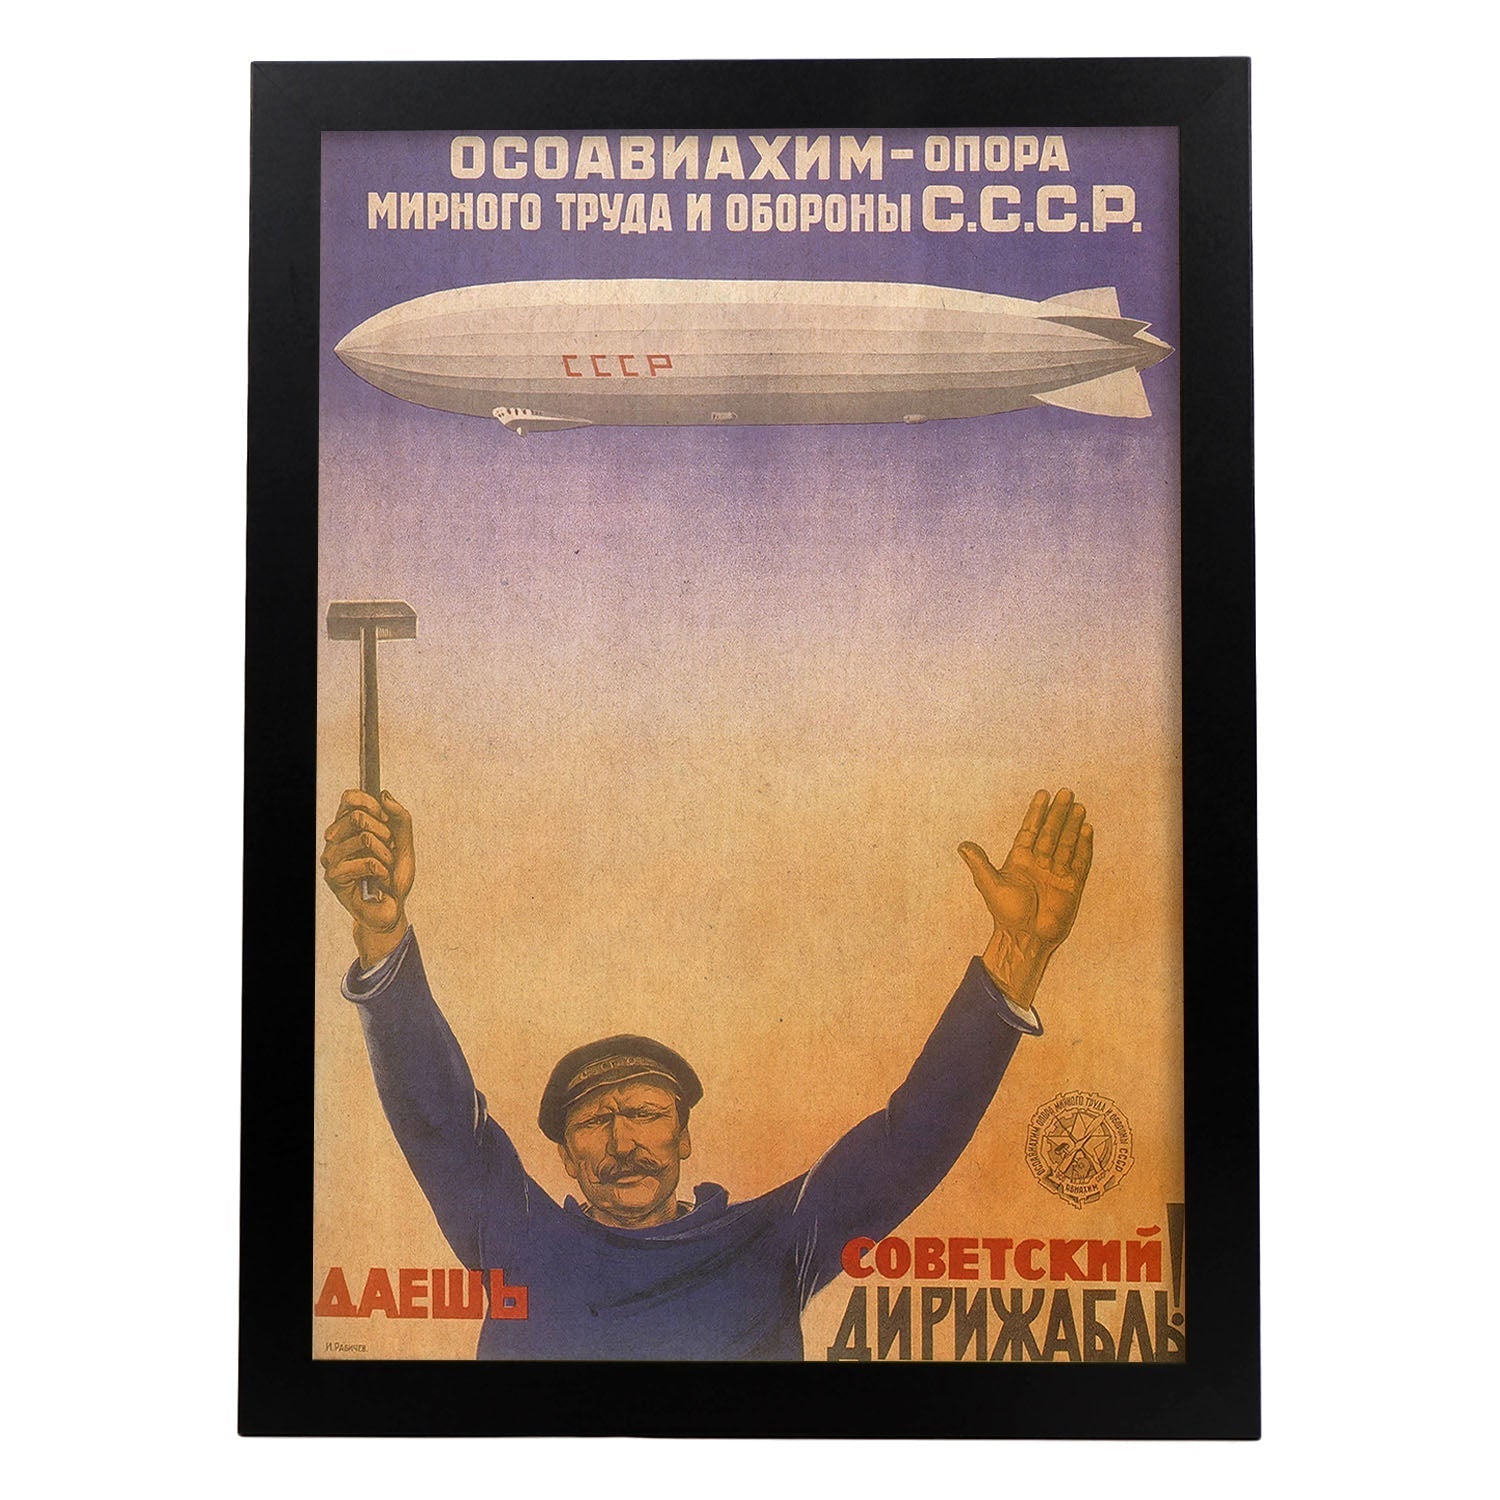 Poster vintage. Cartel vintage Union Sovietica. "Labor y debensa".-Artwork-Nacnic-A3-Marco Negro-Nacnic Estudio SL